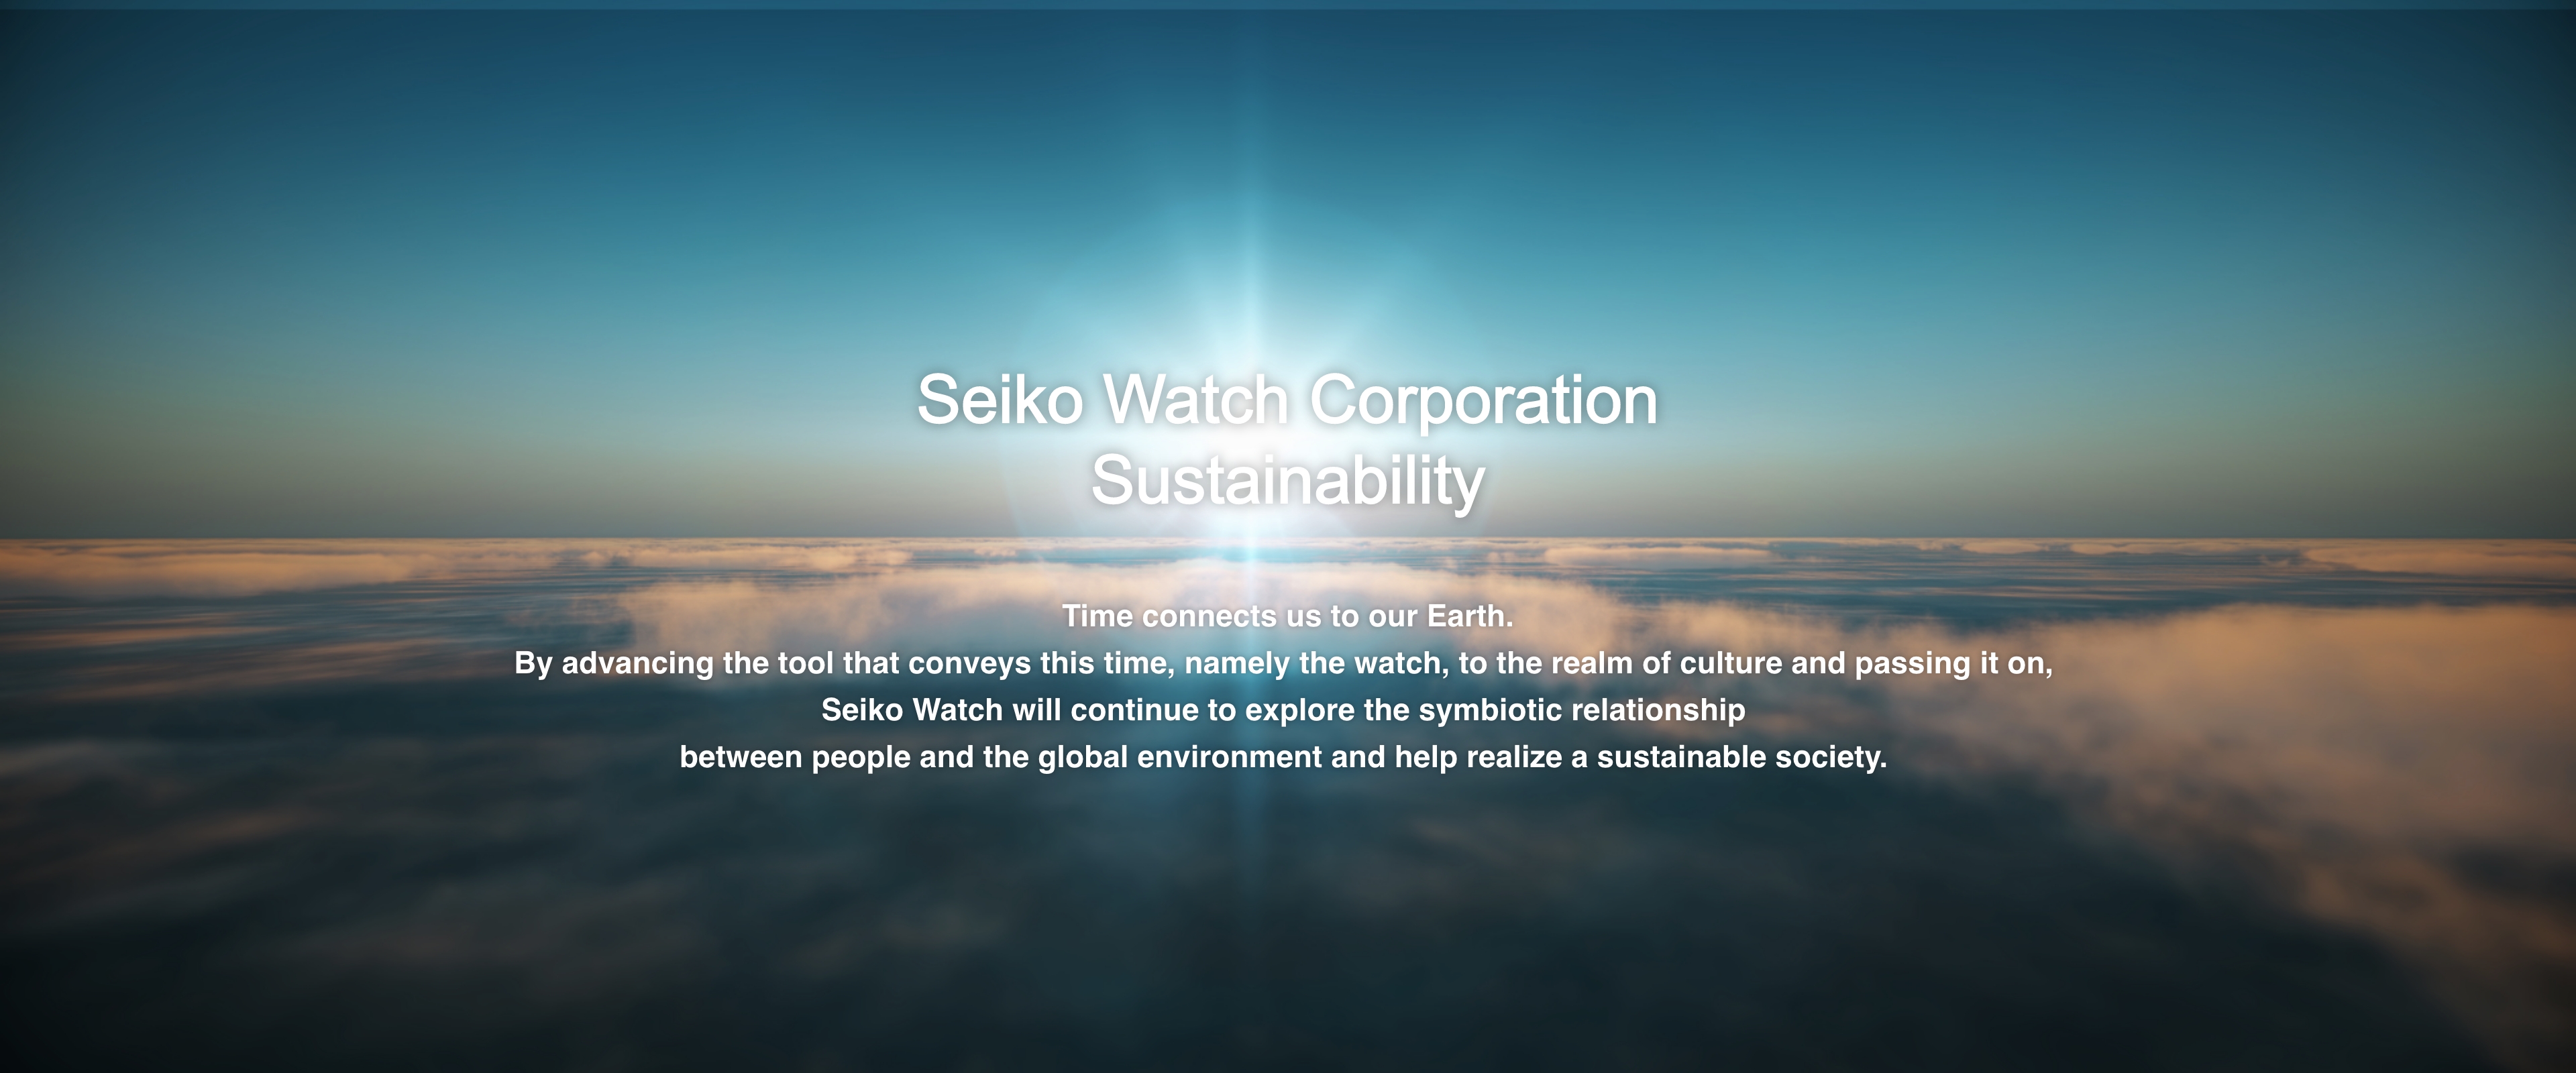 นโยบายเพื่อความยั่งยืนของ Seiko Watch Corporation